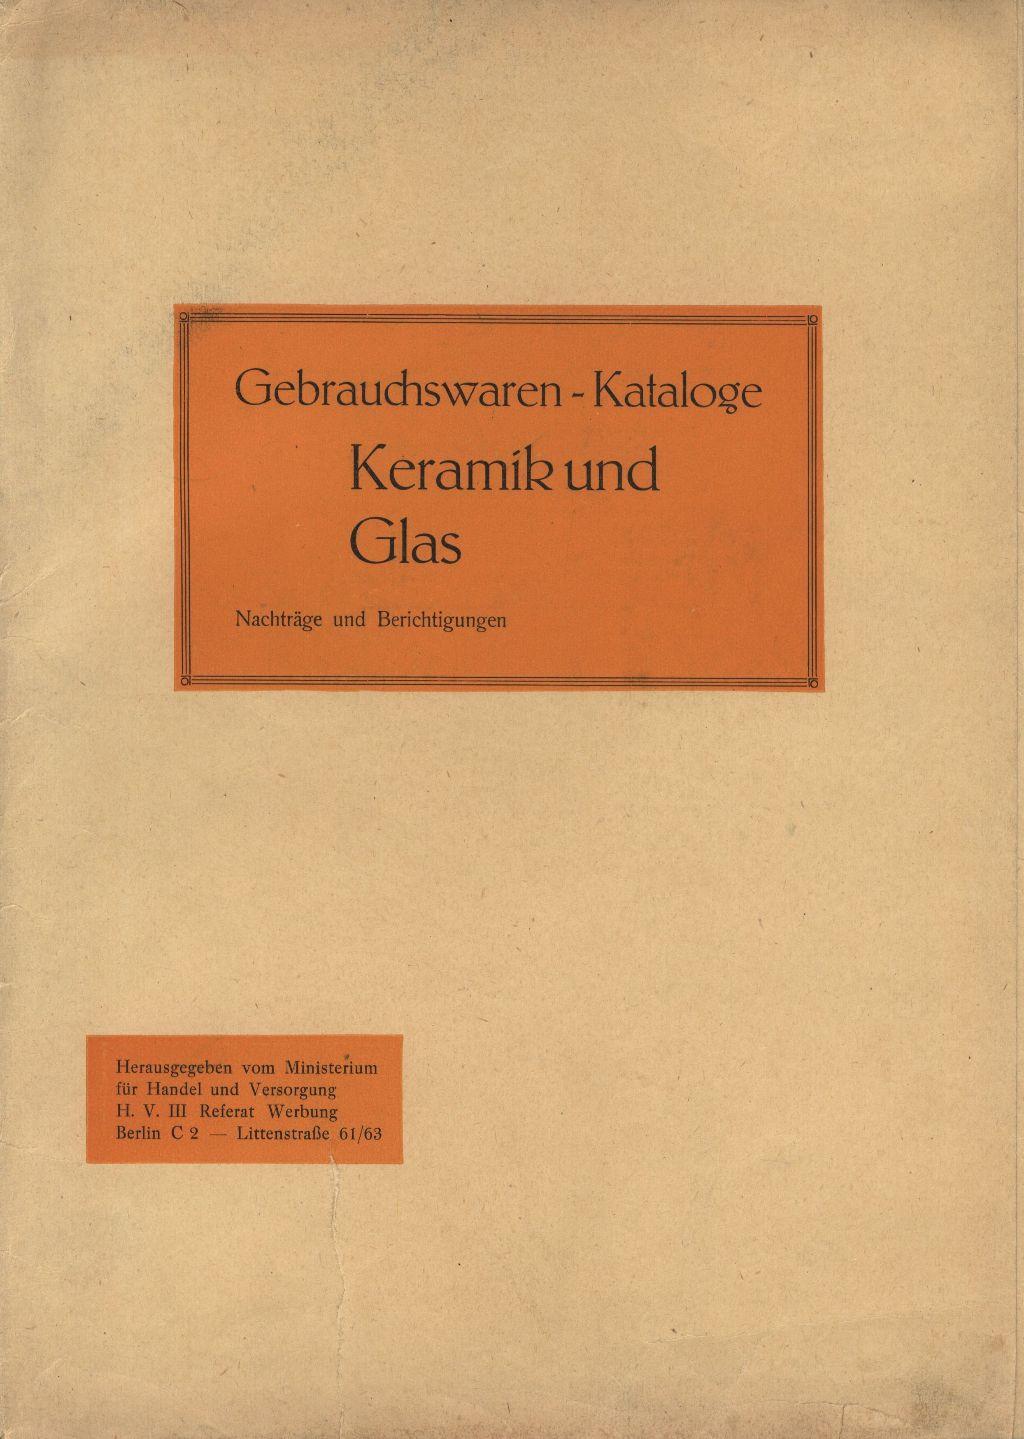 "DDR Gebrauchswaren-Katalog Berichtigung 1959"